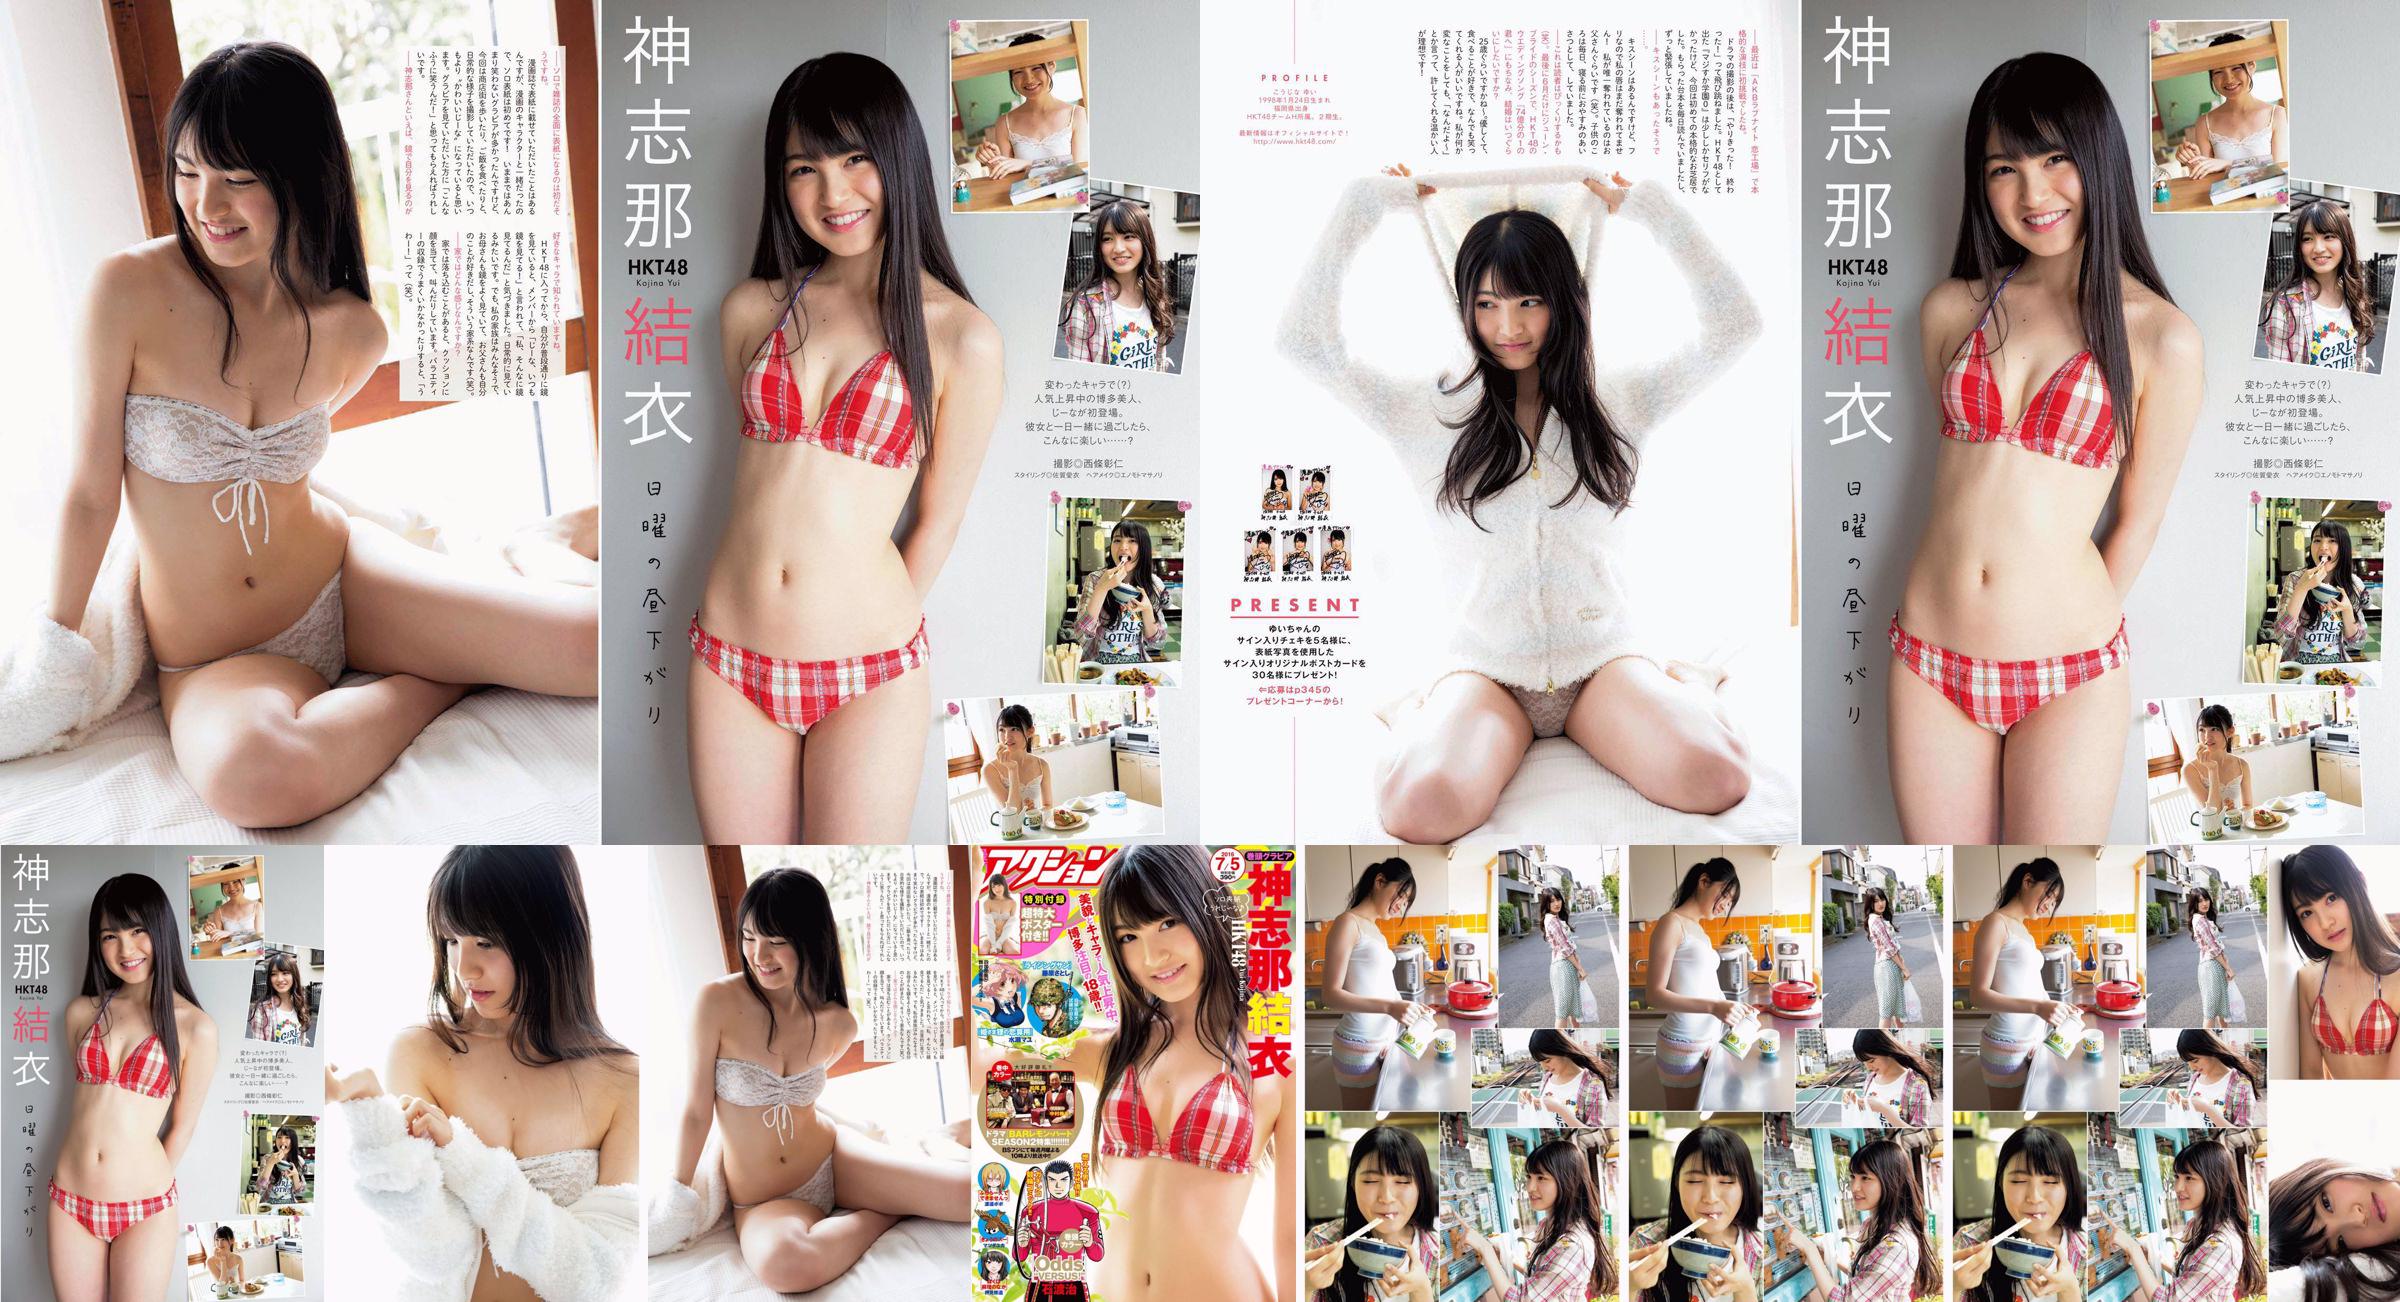 [Manga Action] Shinshina Yui 2016 No.13 Photo Magazine No.456d95 Pagina 2